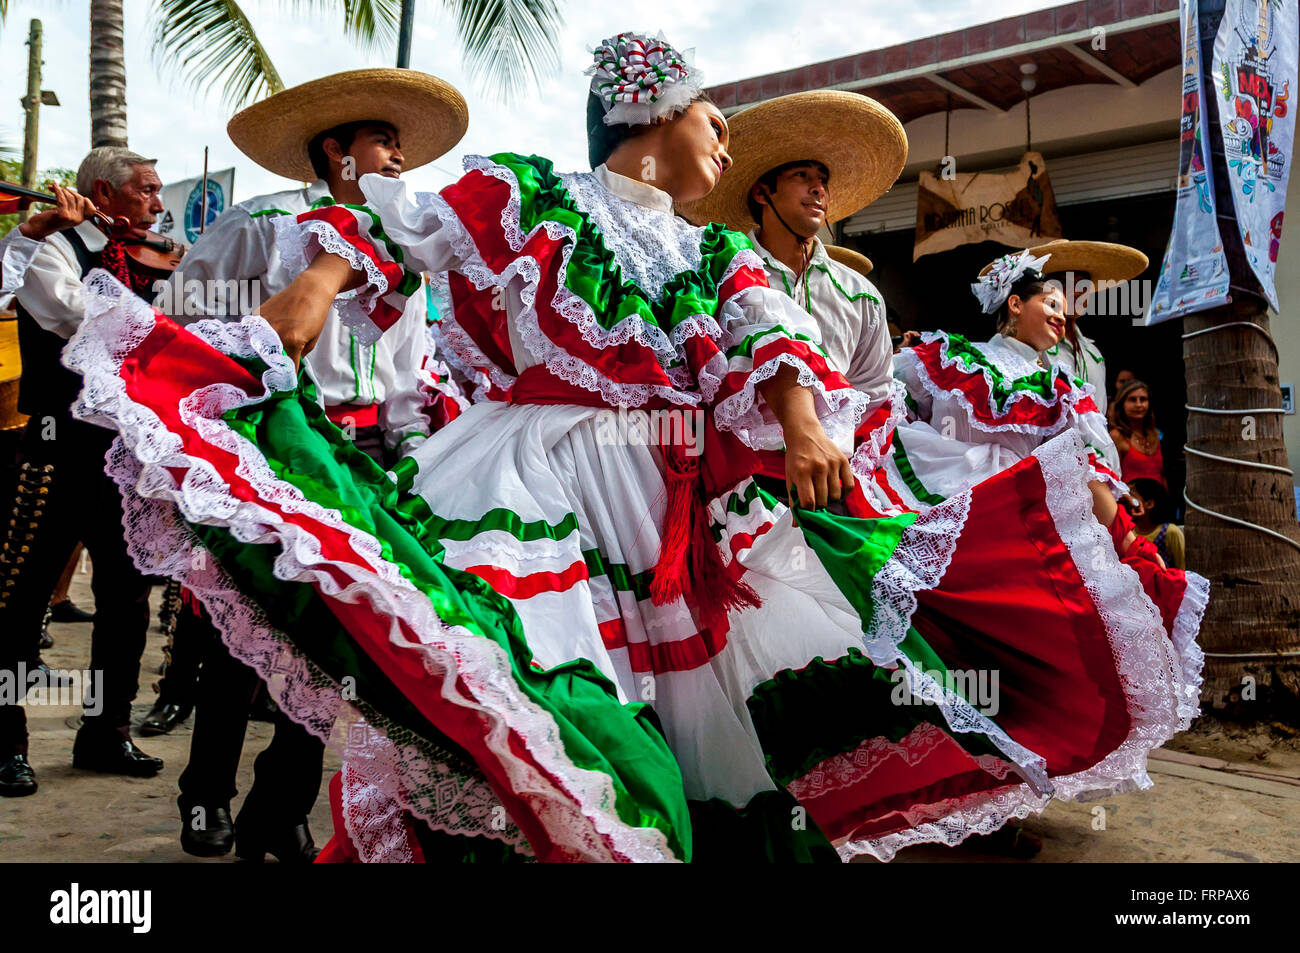 Sayulita Nayarit, Mexique : les danseurs portent les couleurs vives de drapeau du Mexique (rouge, blanc, vert) Danse de parade avec mariachis. Banque D'Images